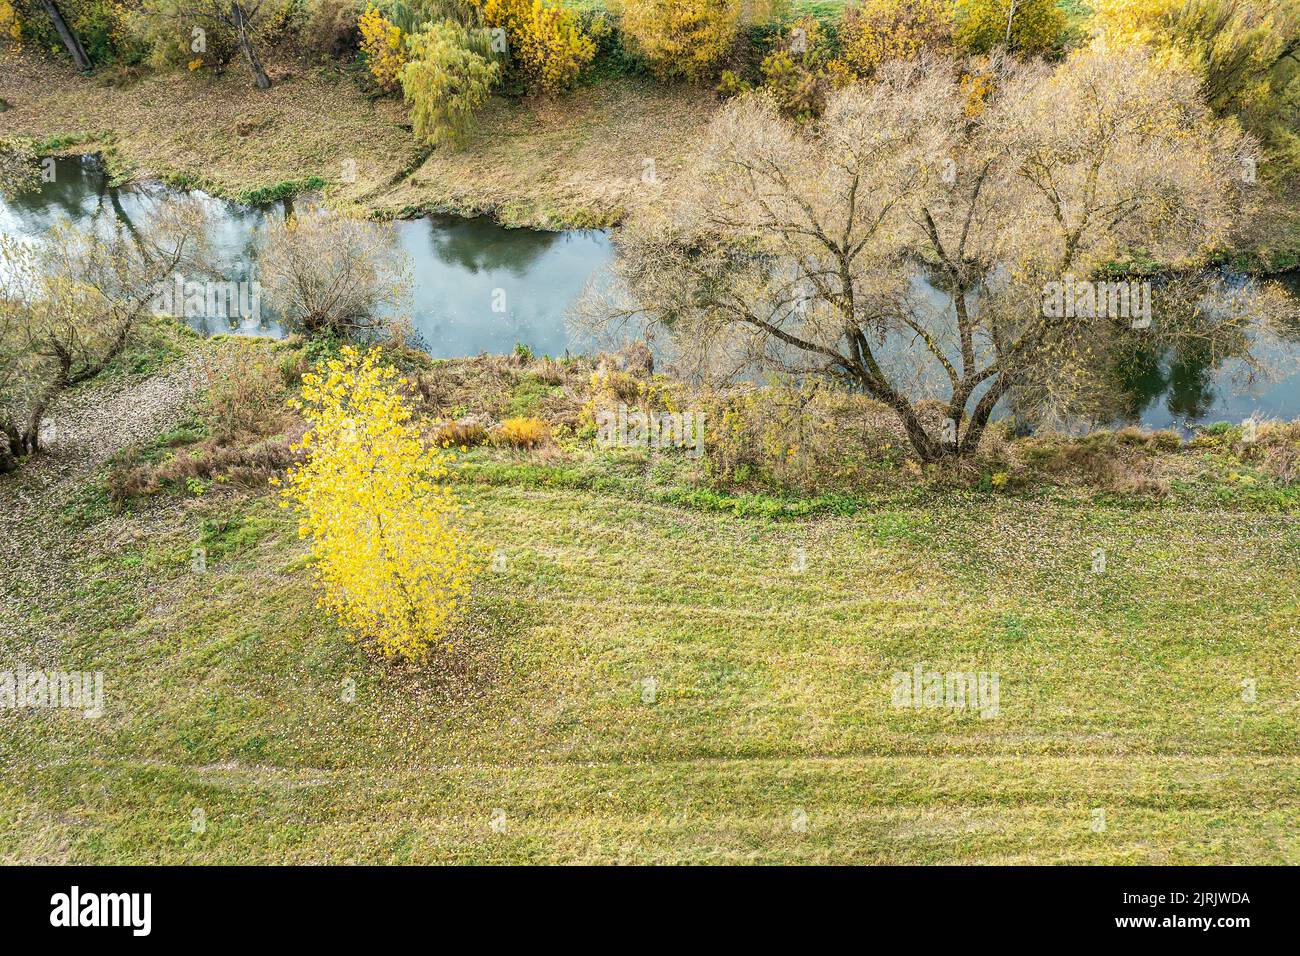 vista dall'alto di un bellissimo paesaggio naturale con un piccolo fiume nella stagione autunnale. fotografia con droni. Foto Stock